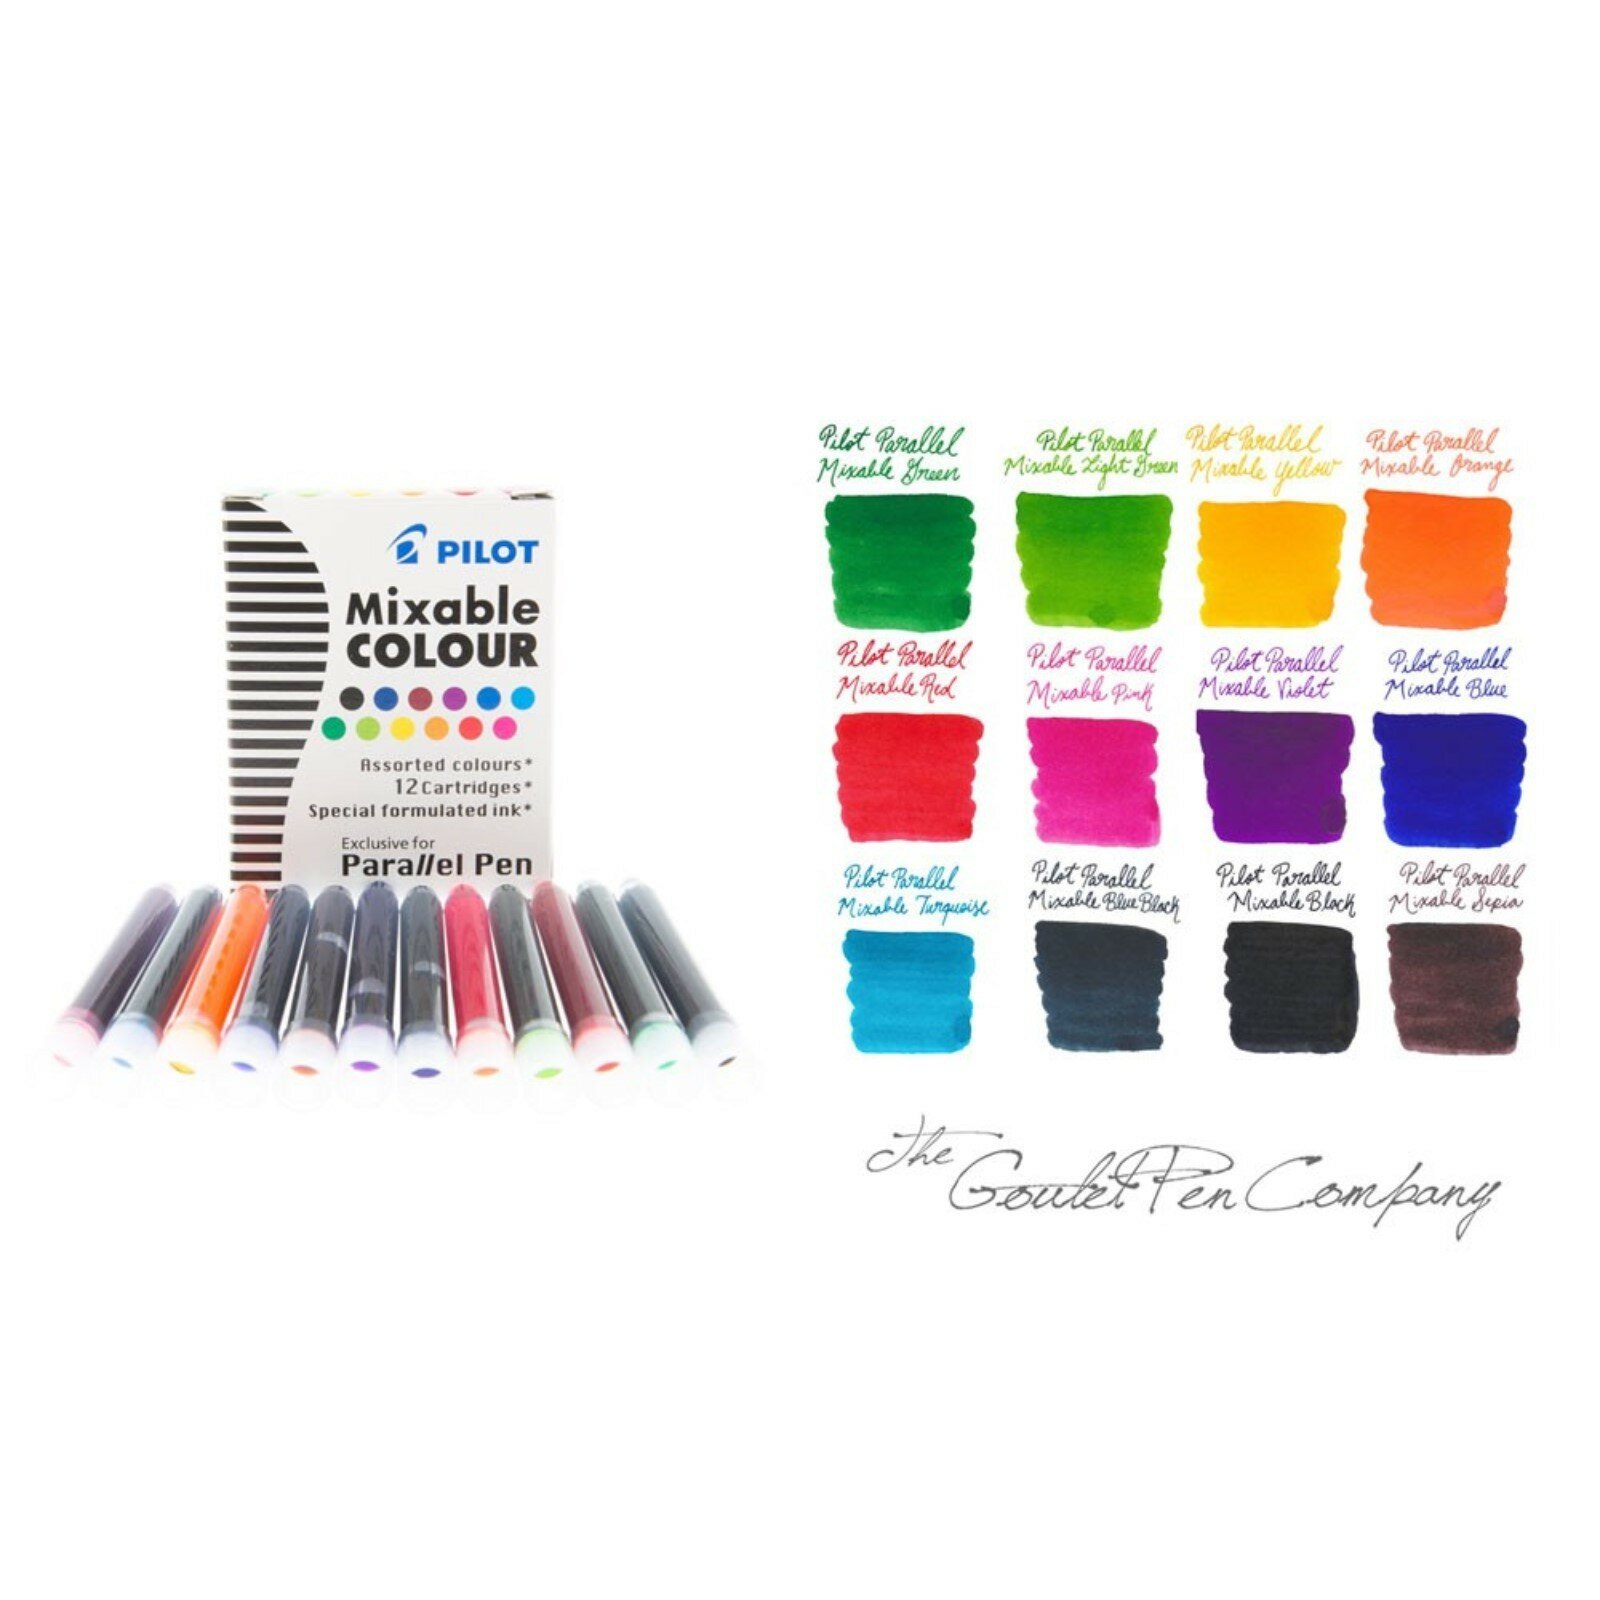 Картридж чернильный, набор 12 штук для Parallel Pen (каллиграфия), 12 цветов, микс